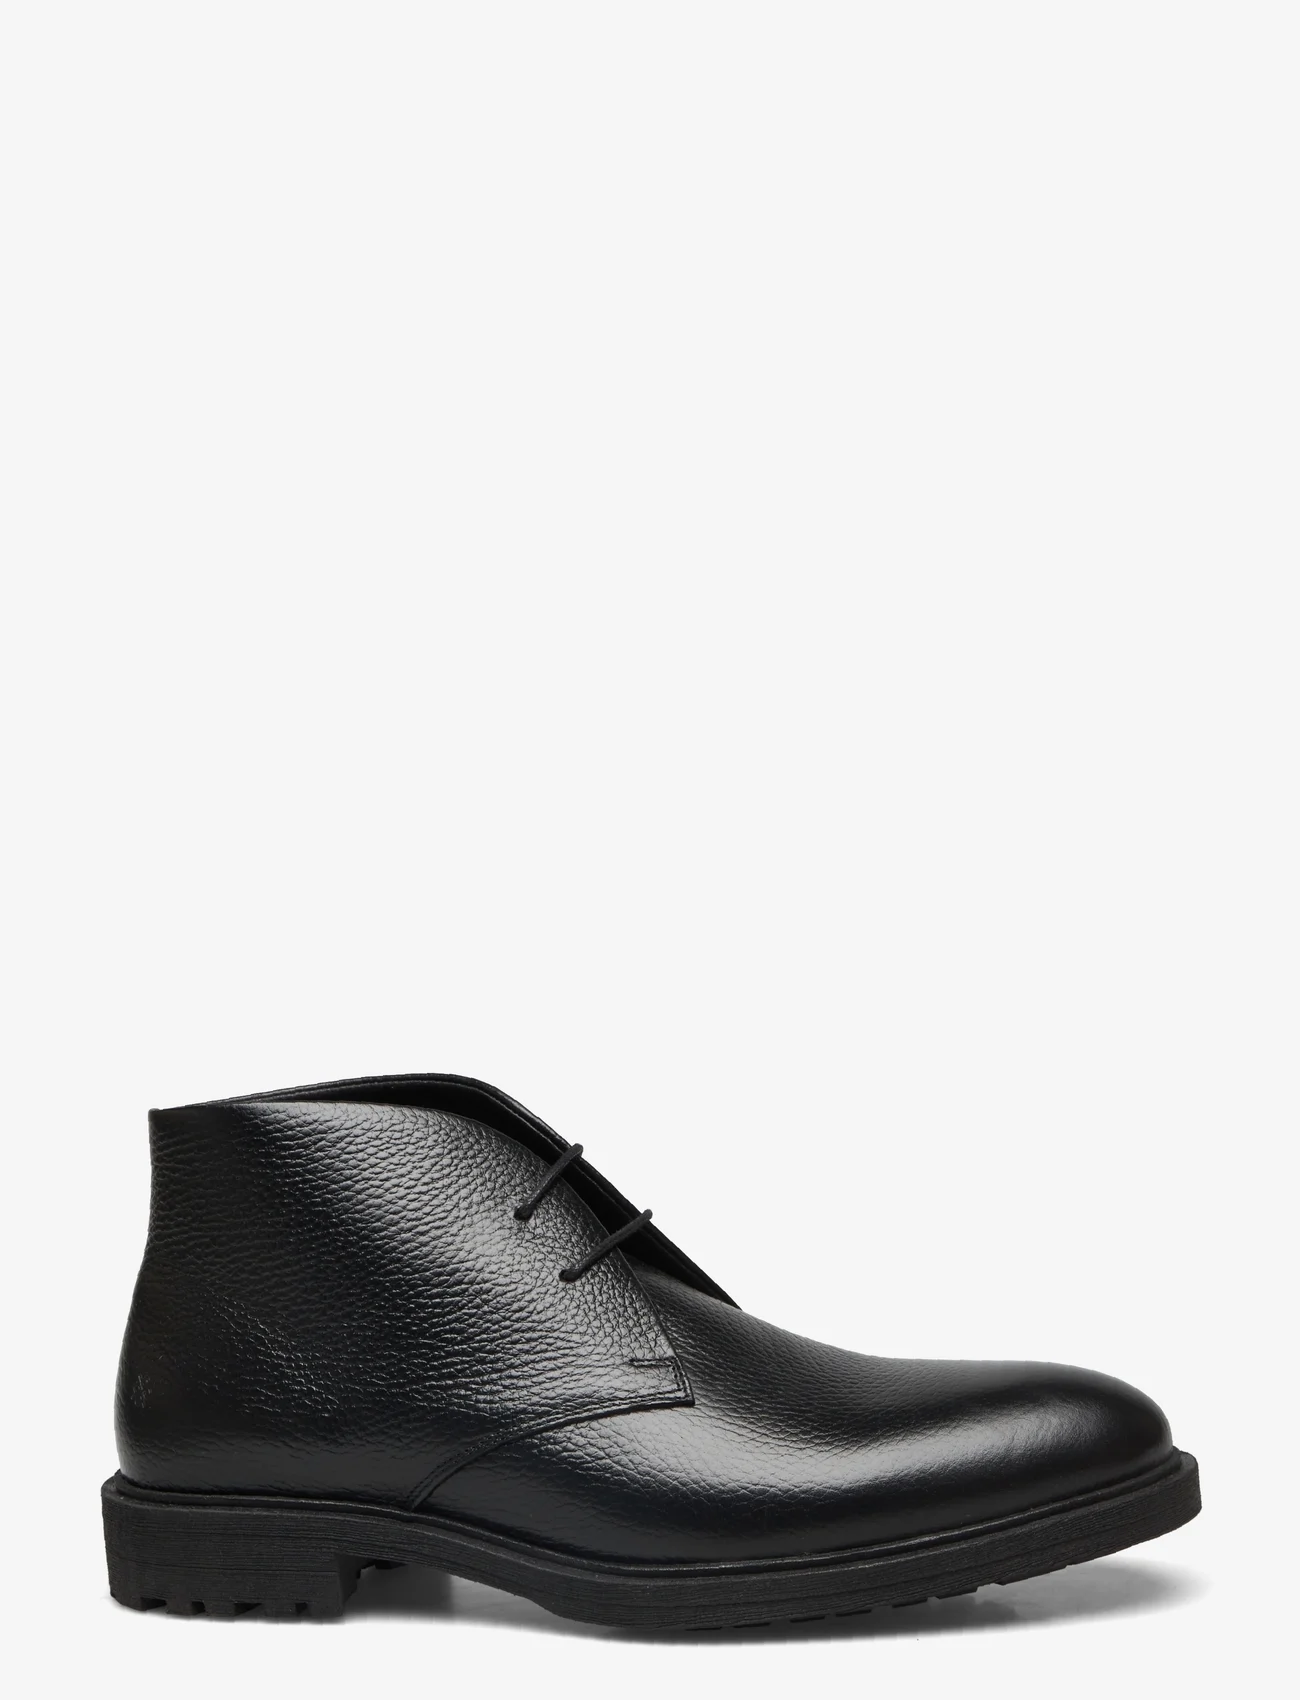 Playboy Footwear - Jacky - schnürschuhe - black tumbled leather - 1